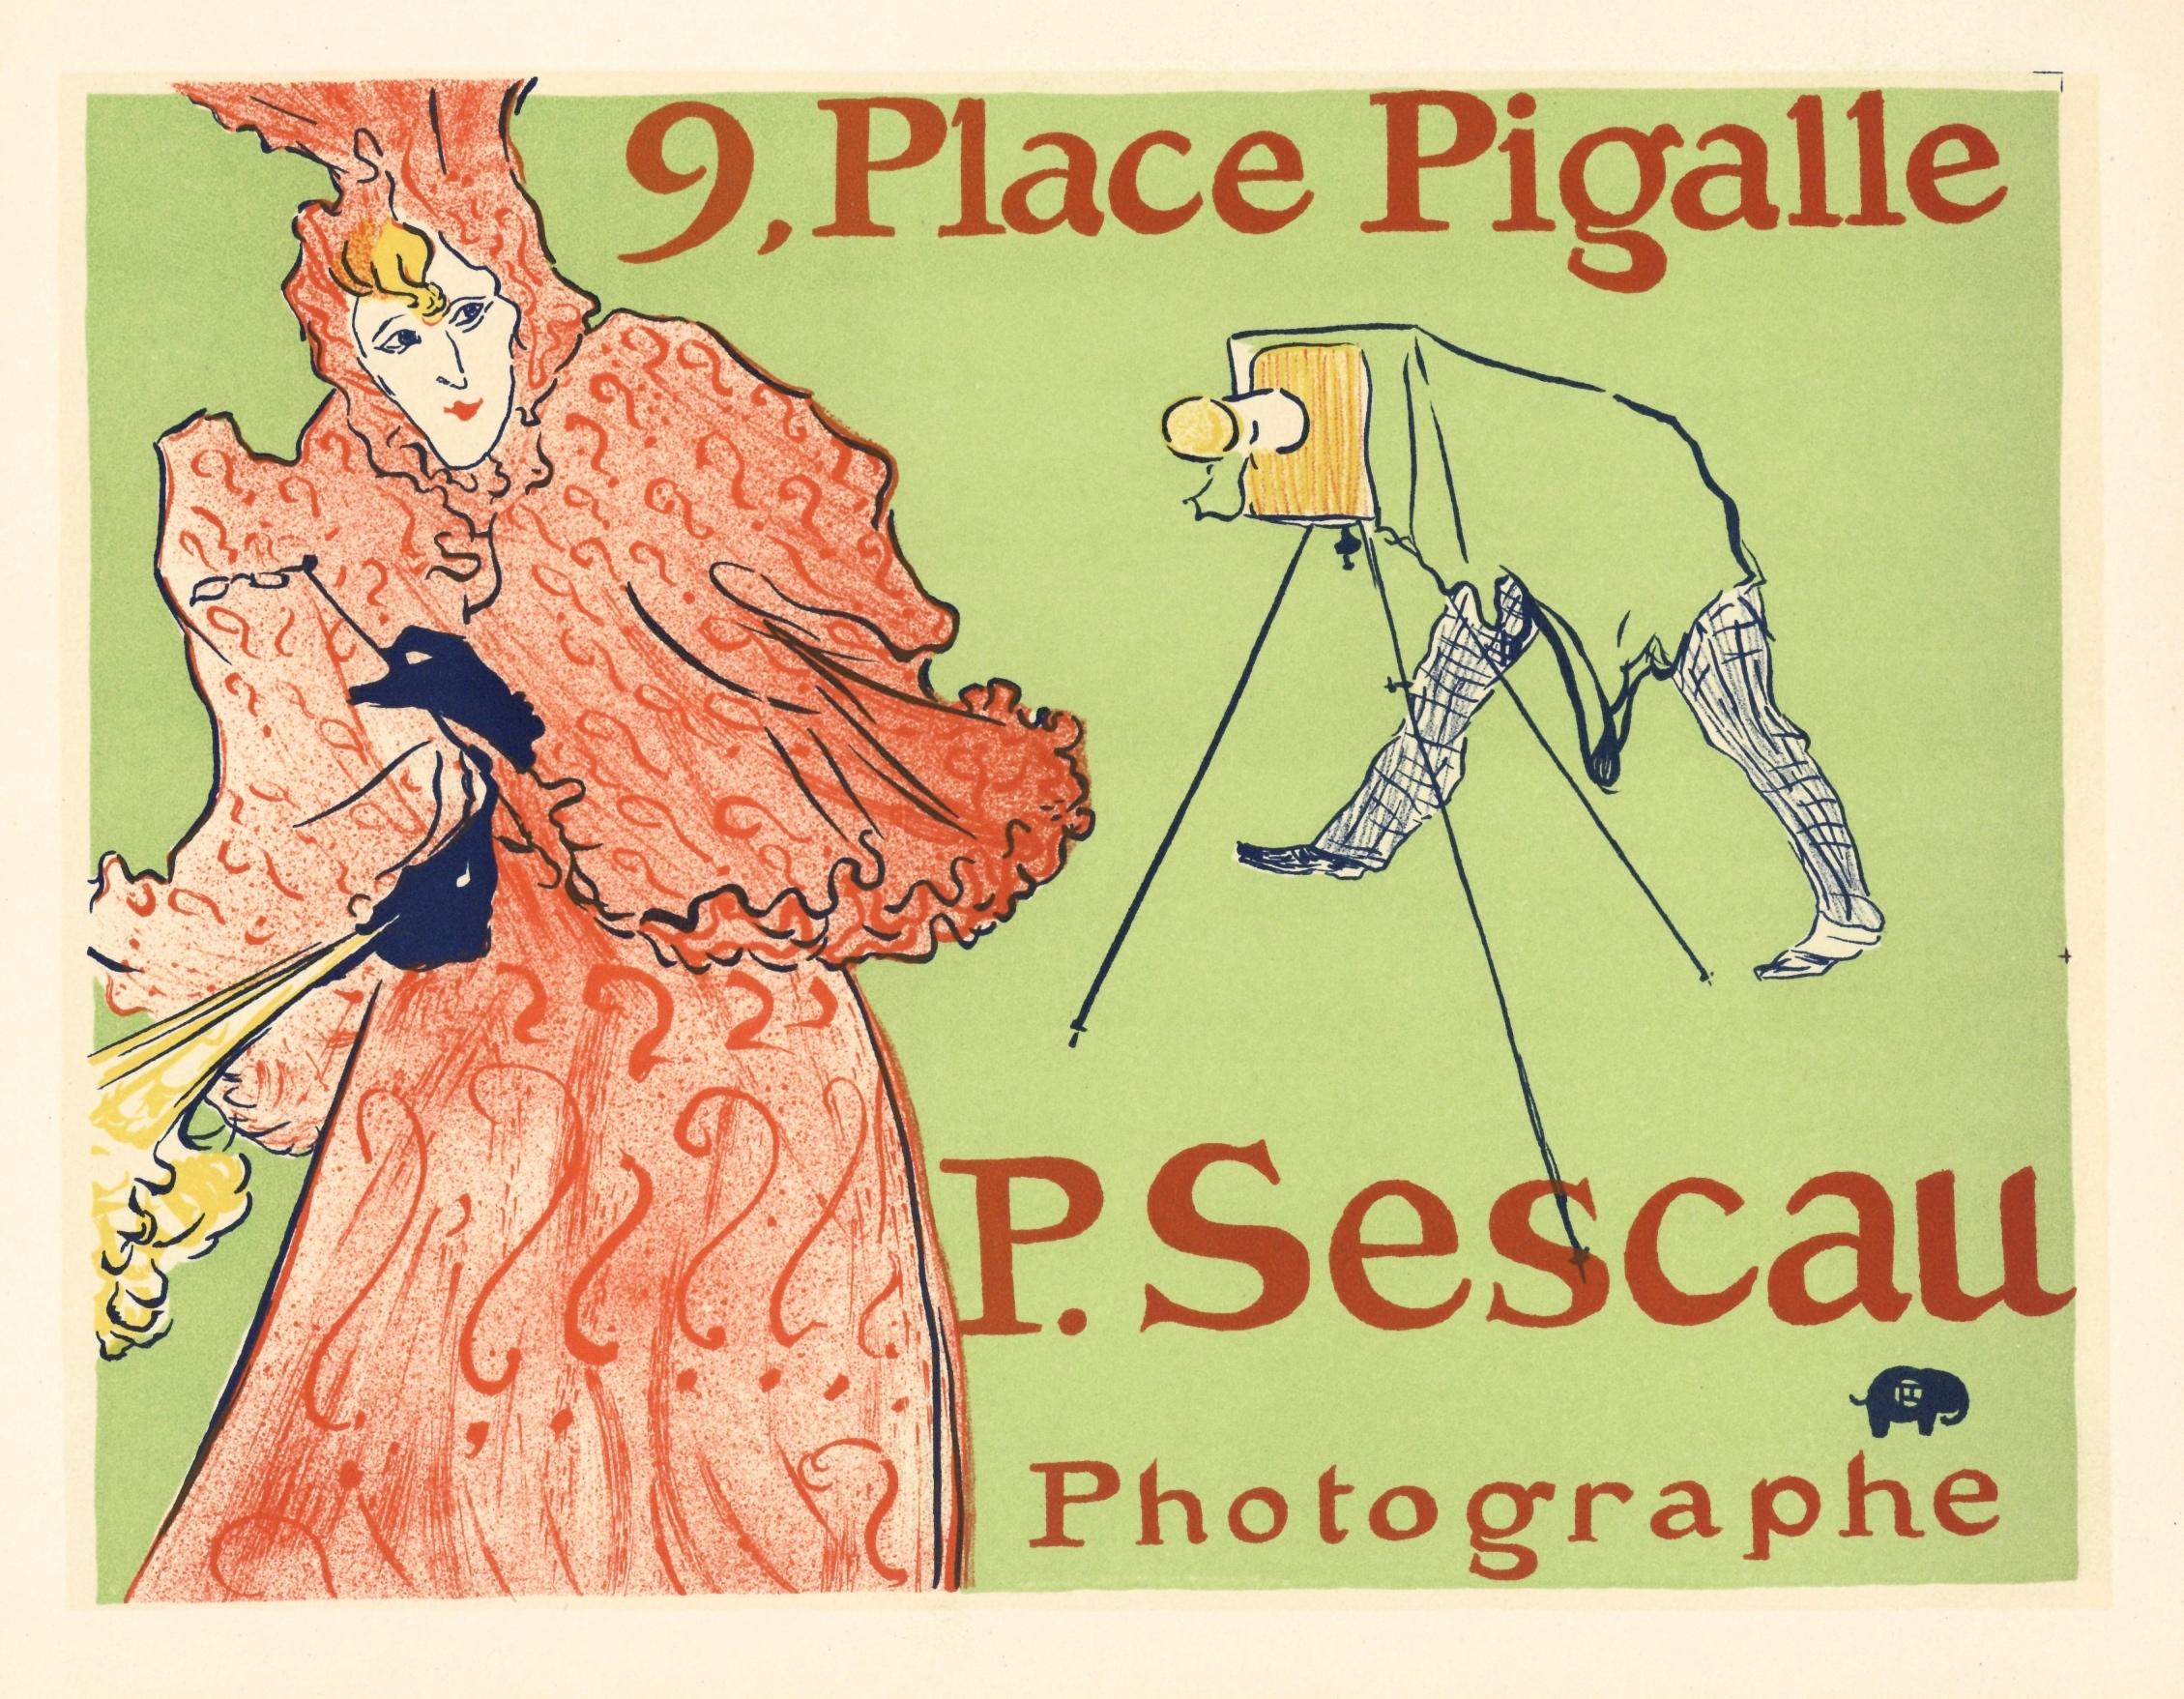 "Sescau Photographe" lithograph poster - Print by (After) Henri Toulouse Lautrec